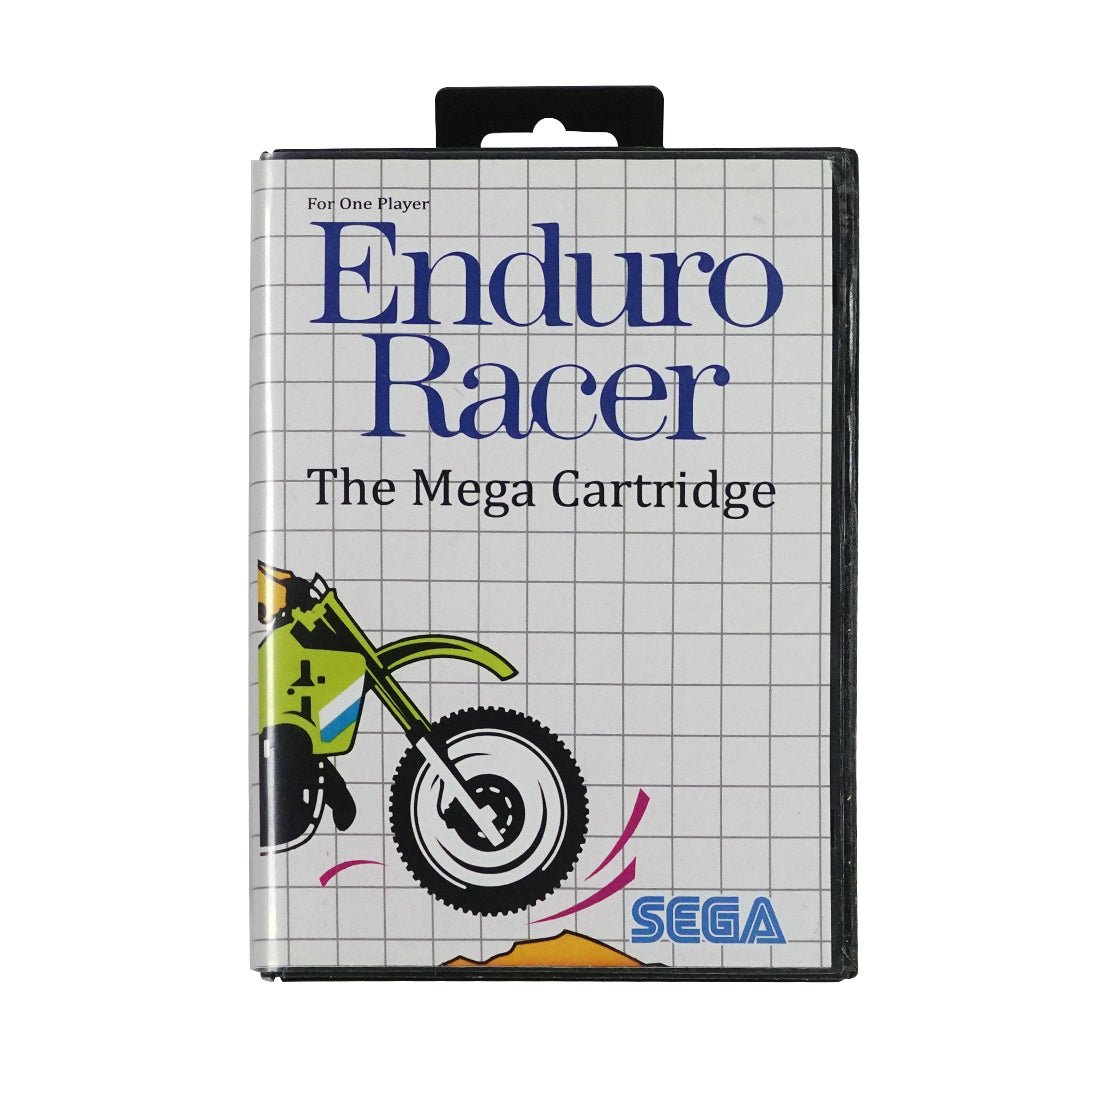 (Pre-Owned) Enduro Racer: The Mega Cartridge - Sega - Store 974 | ستور ٩٧٤